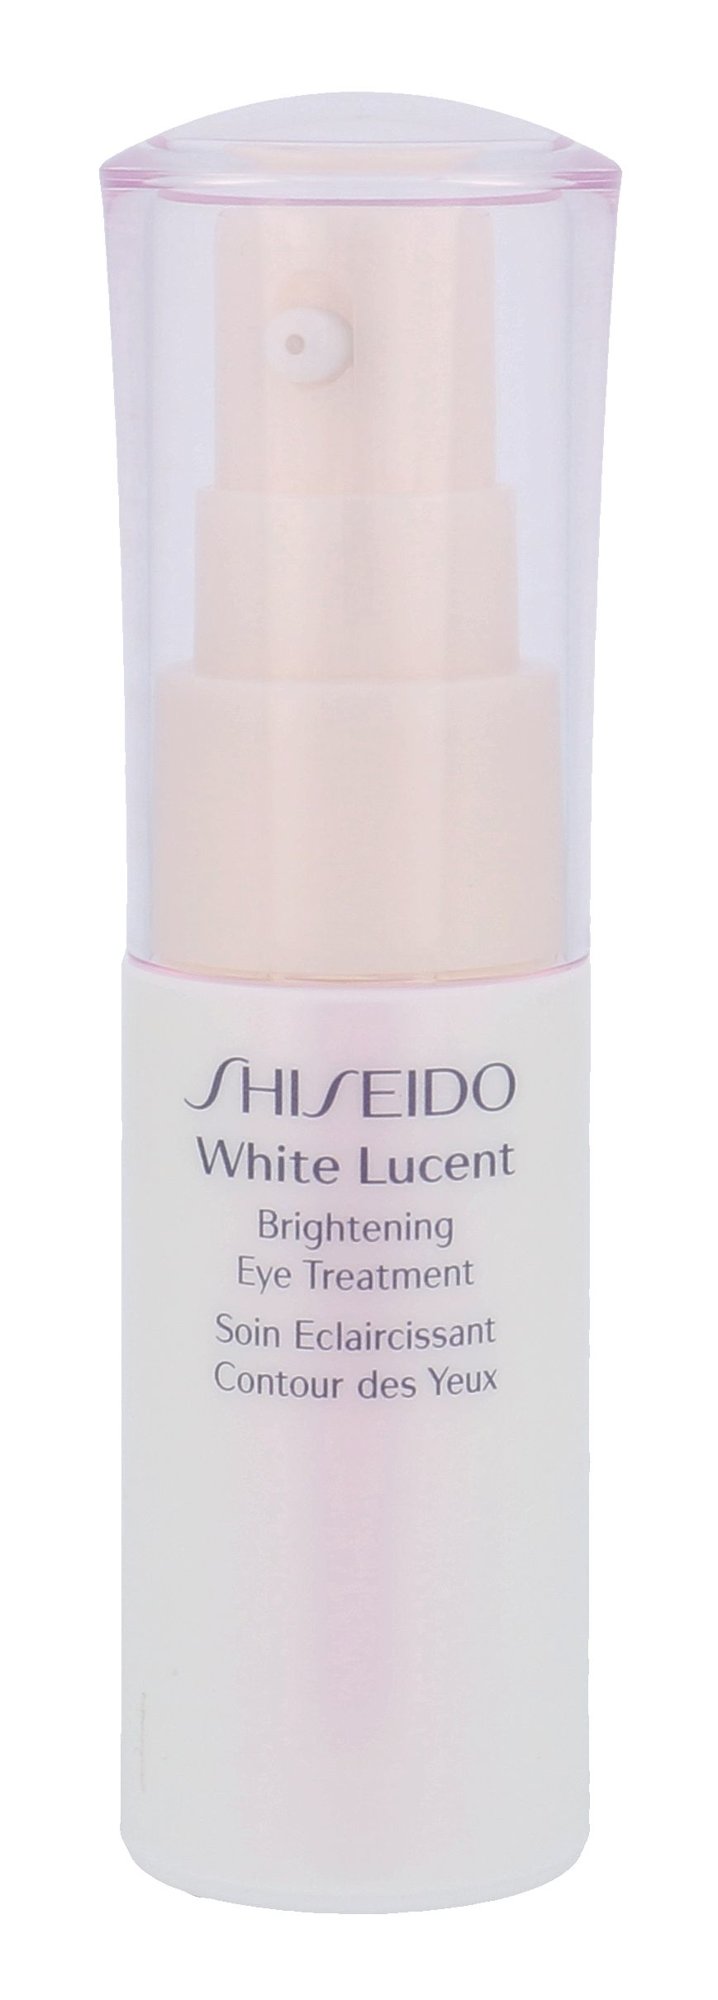 Shiseido White Lucent paakių kremas